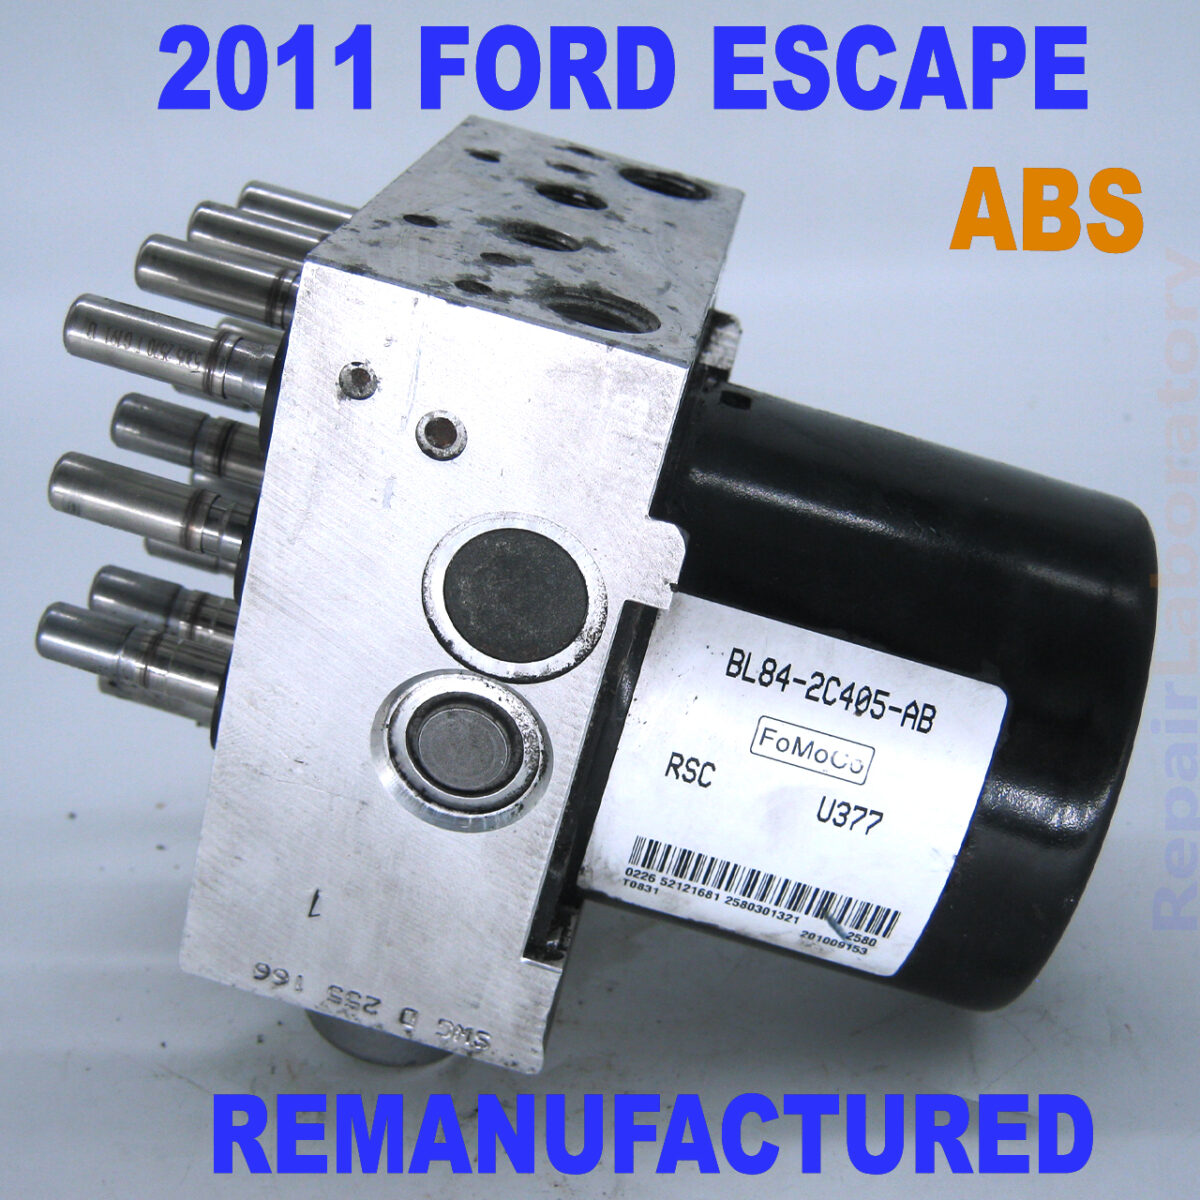 2011_ford_escape_abs_hydraulic unit_BL84-2C405-AB